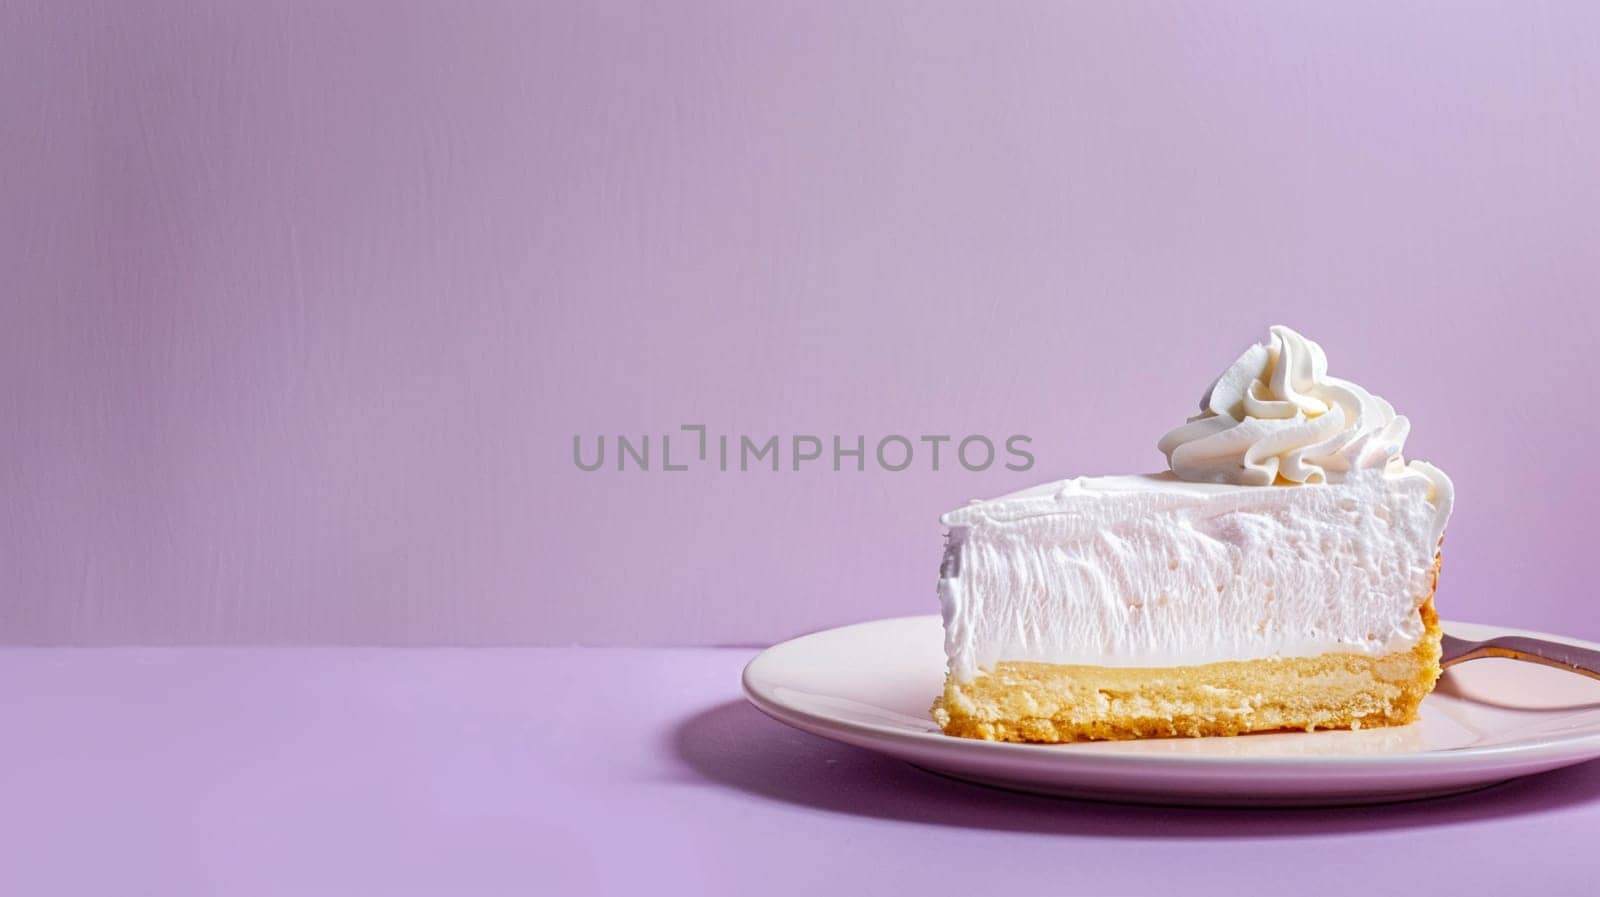 Elegant whipped cream cake slice sitting gracefully against soft purple shade, evoking feelings of indulgence, sweetness, and celebration.